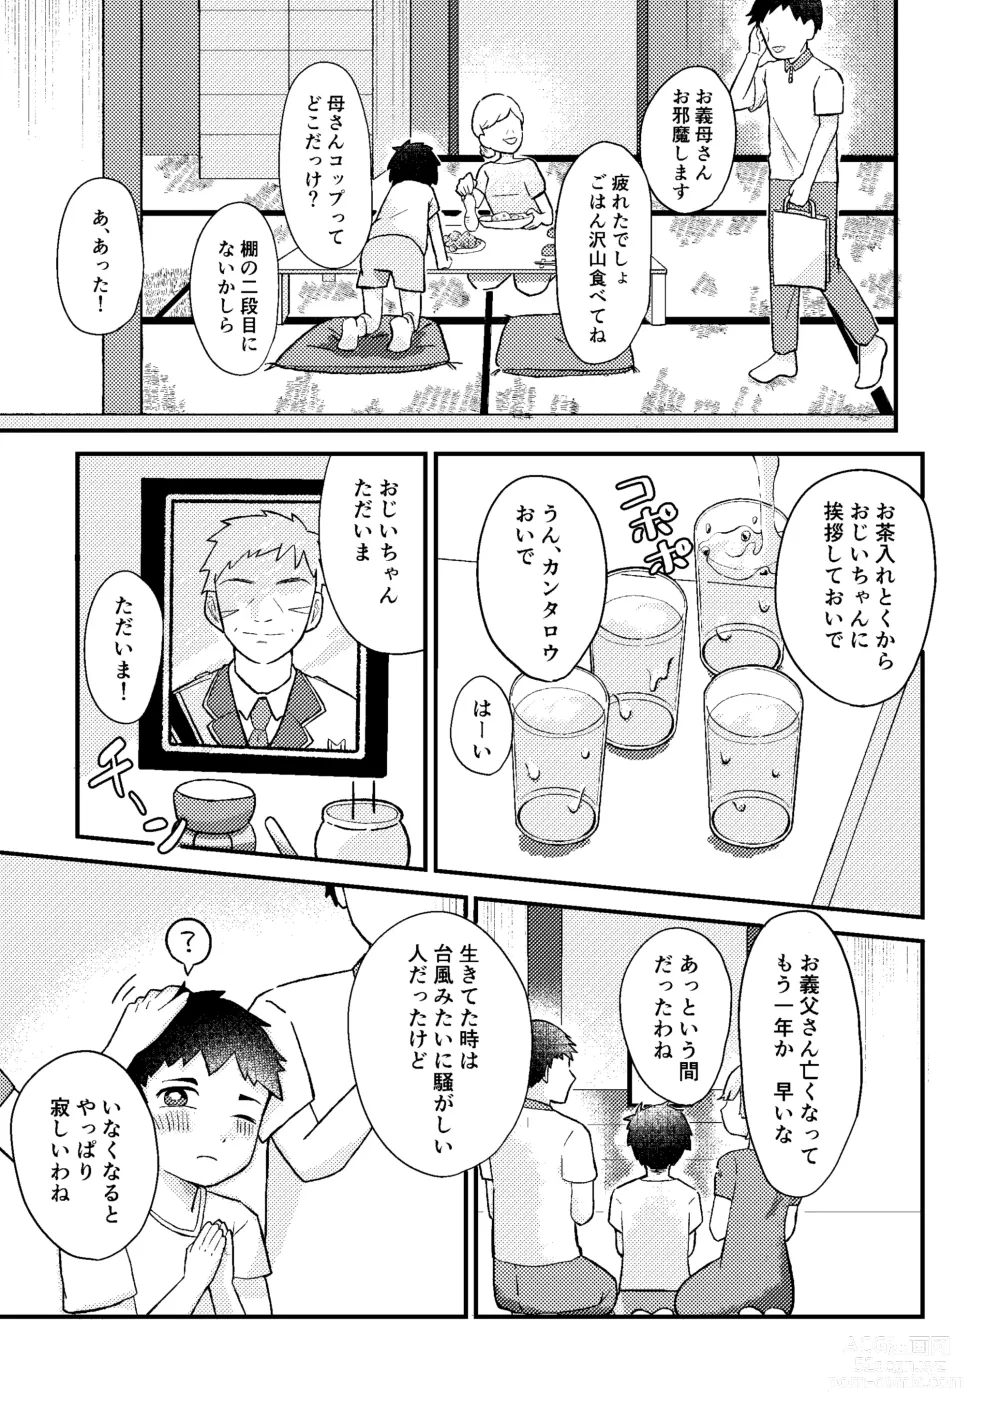 Page 4 of doujinshi Saigo no Natsuyasumi